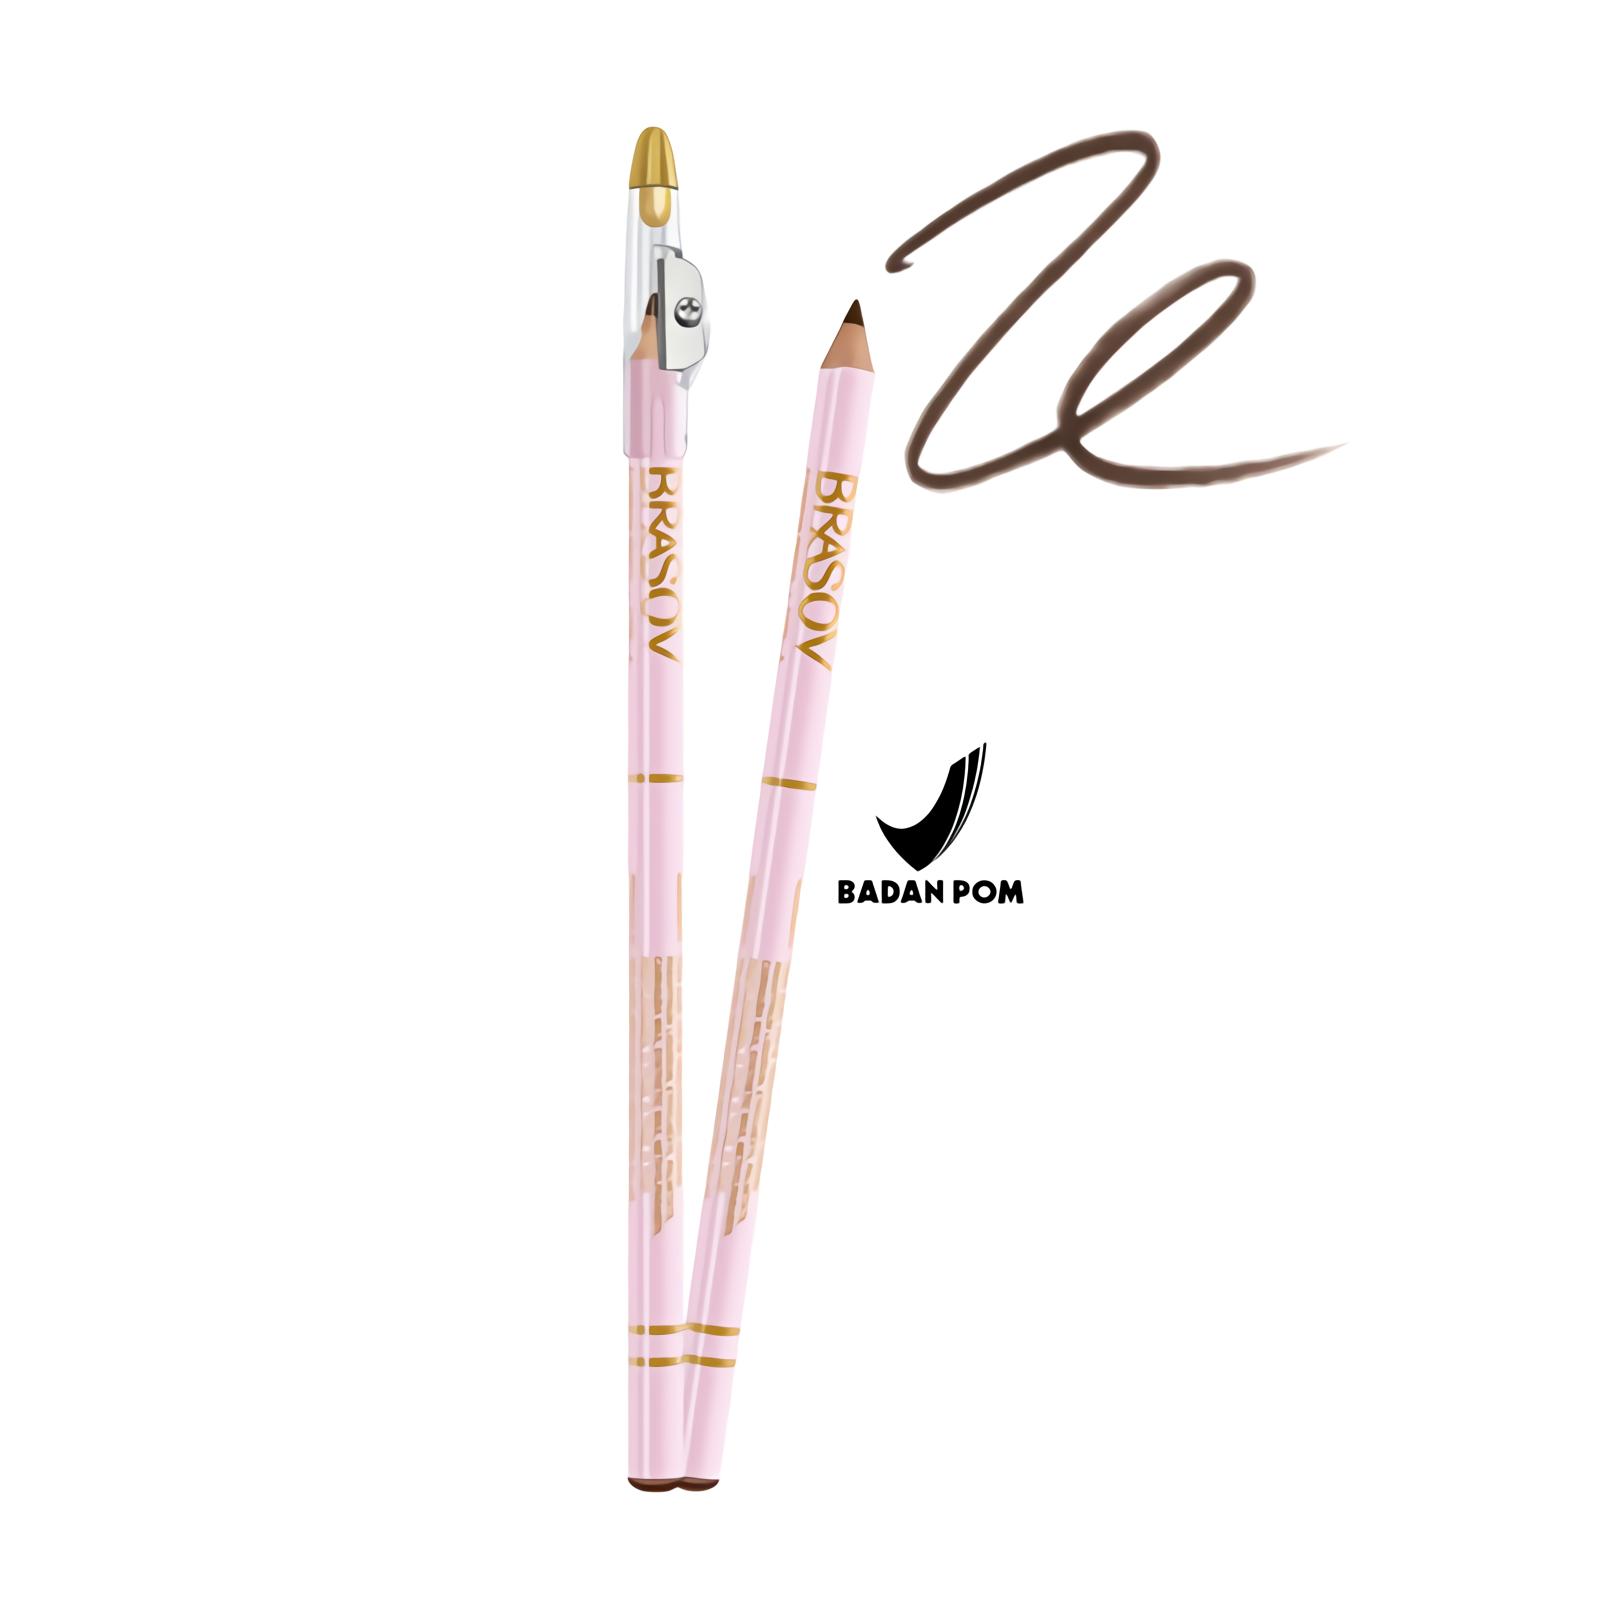 BRASOV Pensil Alis Type A + SERUTAN 2.9 GRAM Eyebrow Pencil Original Sharpener Rautan Ori Viva